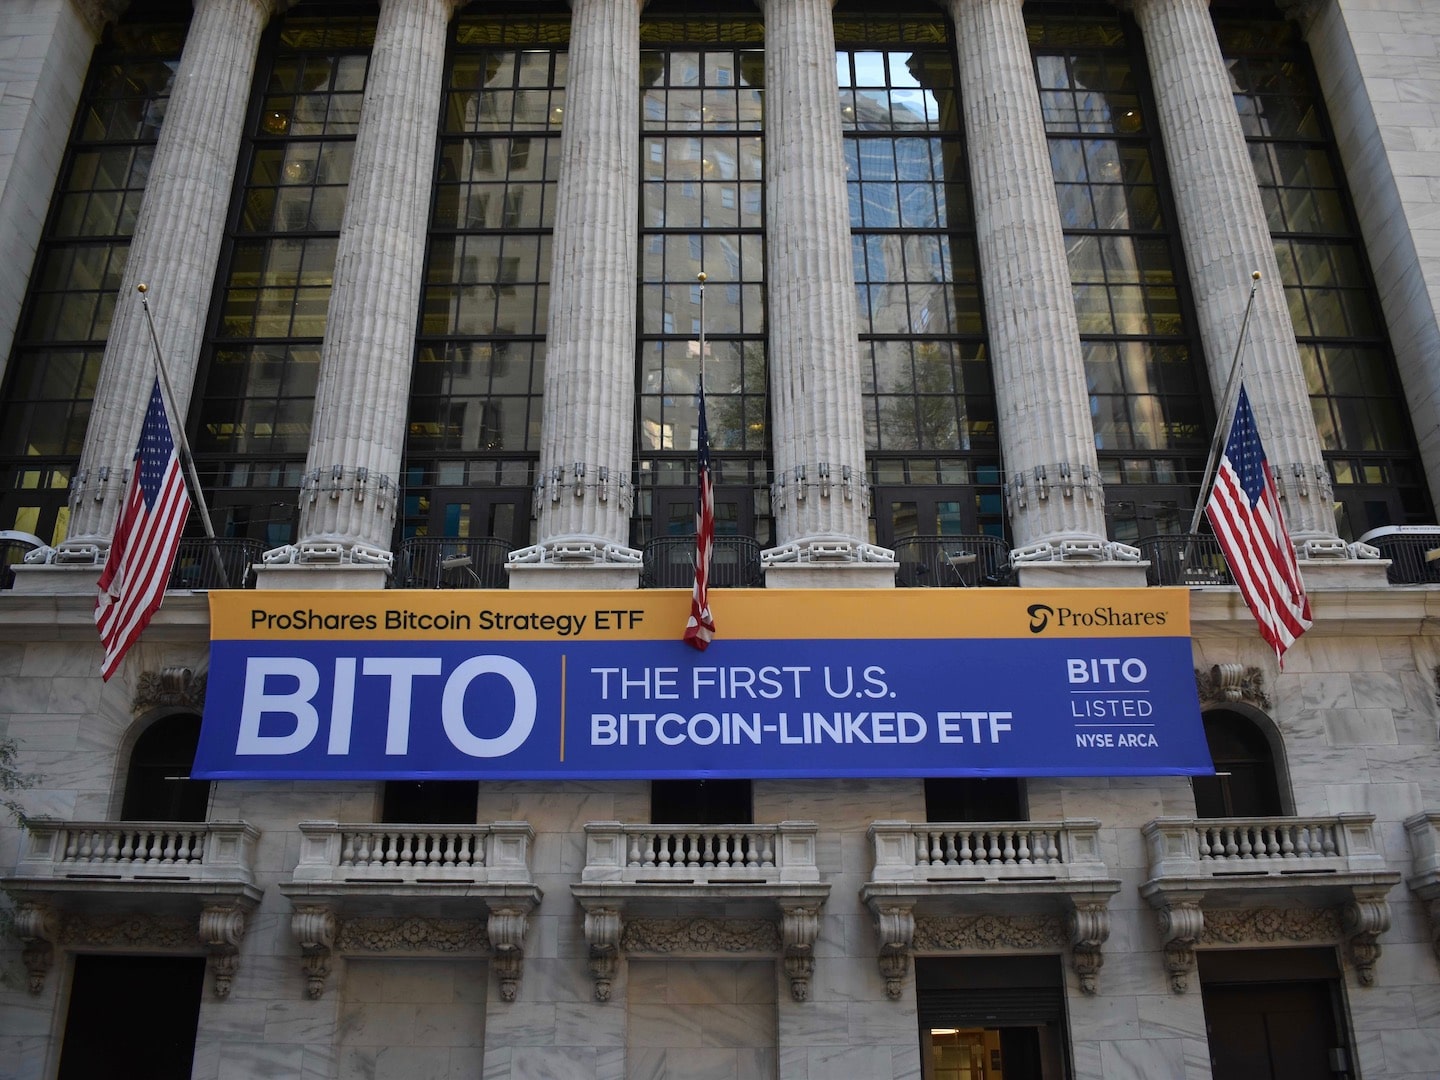 La Bourse de New York mardi, alors que le ProShares Bitcoin Strategy ETF (ticker $BITO) a commencé à se négocier. (Cheyenne Ligon)